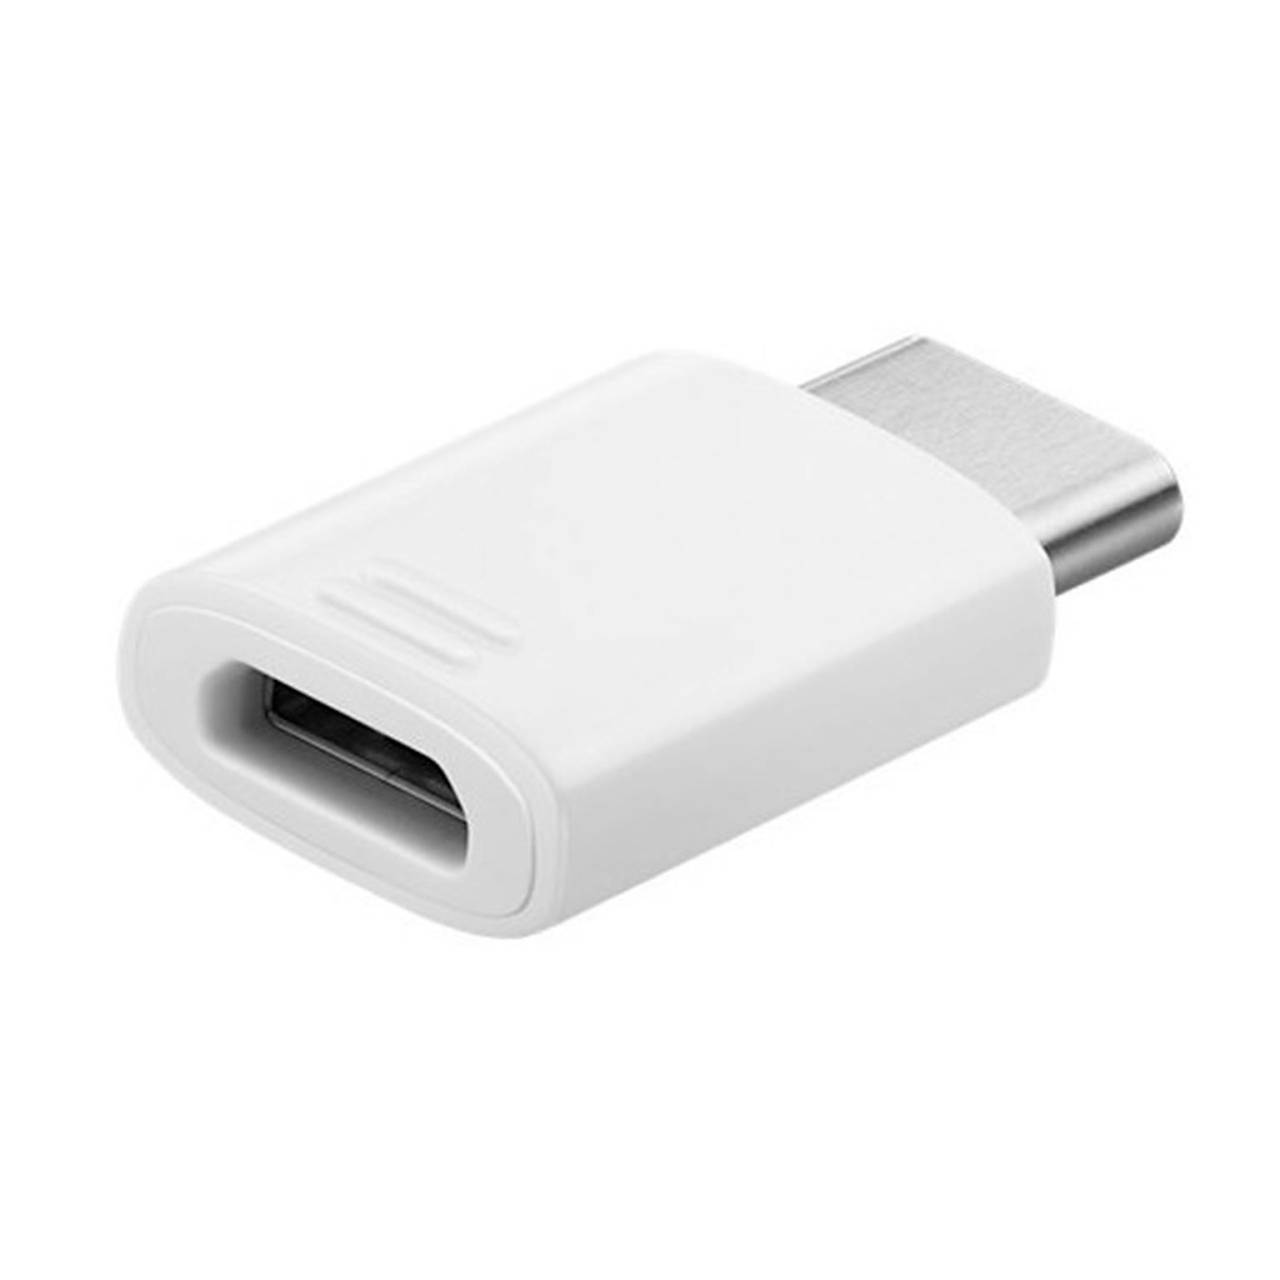 Samsung Adapter Stecker – USB-C auf Micro-USB Adapter für Smartphones und andere Geräte, EE-GN930, 3er-Pack